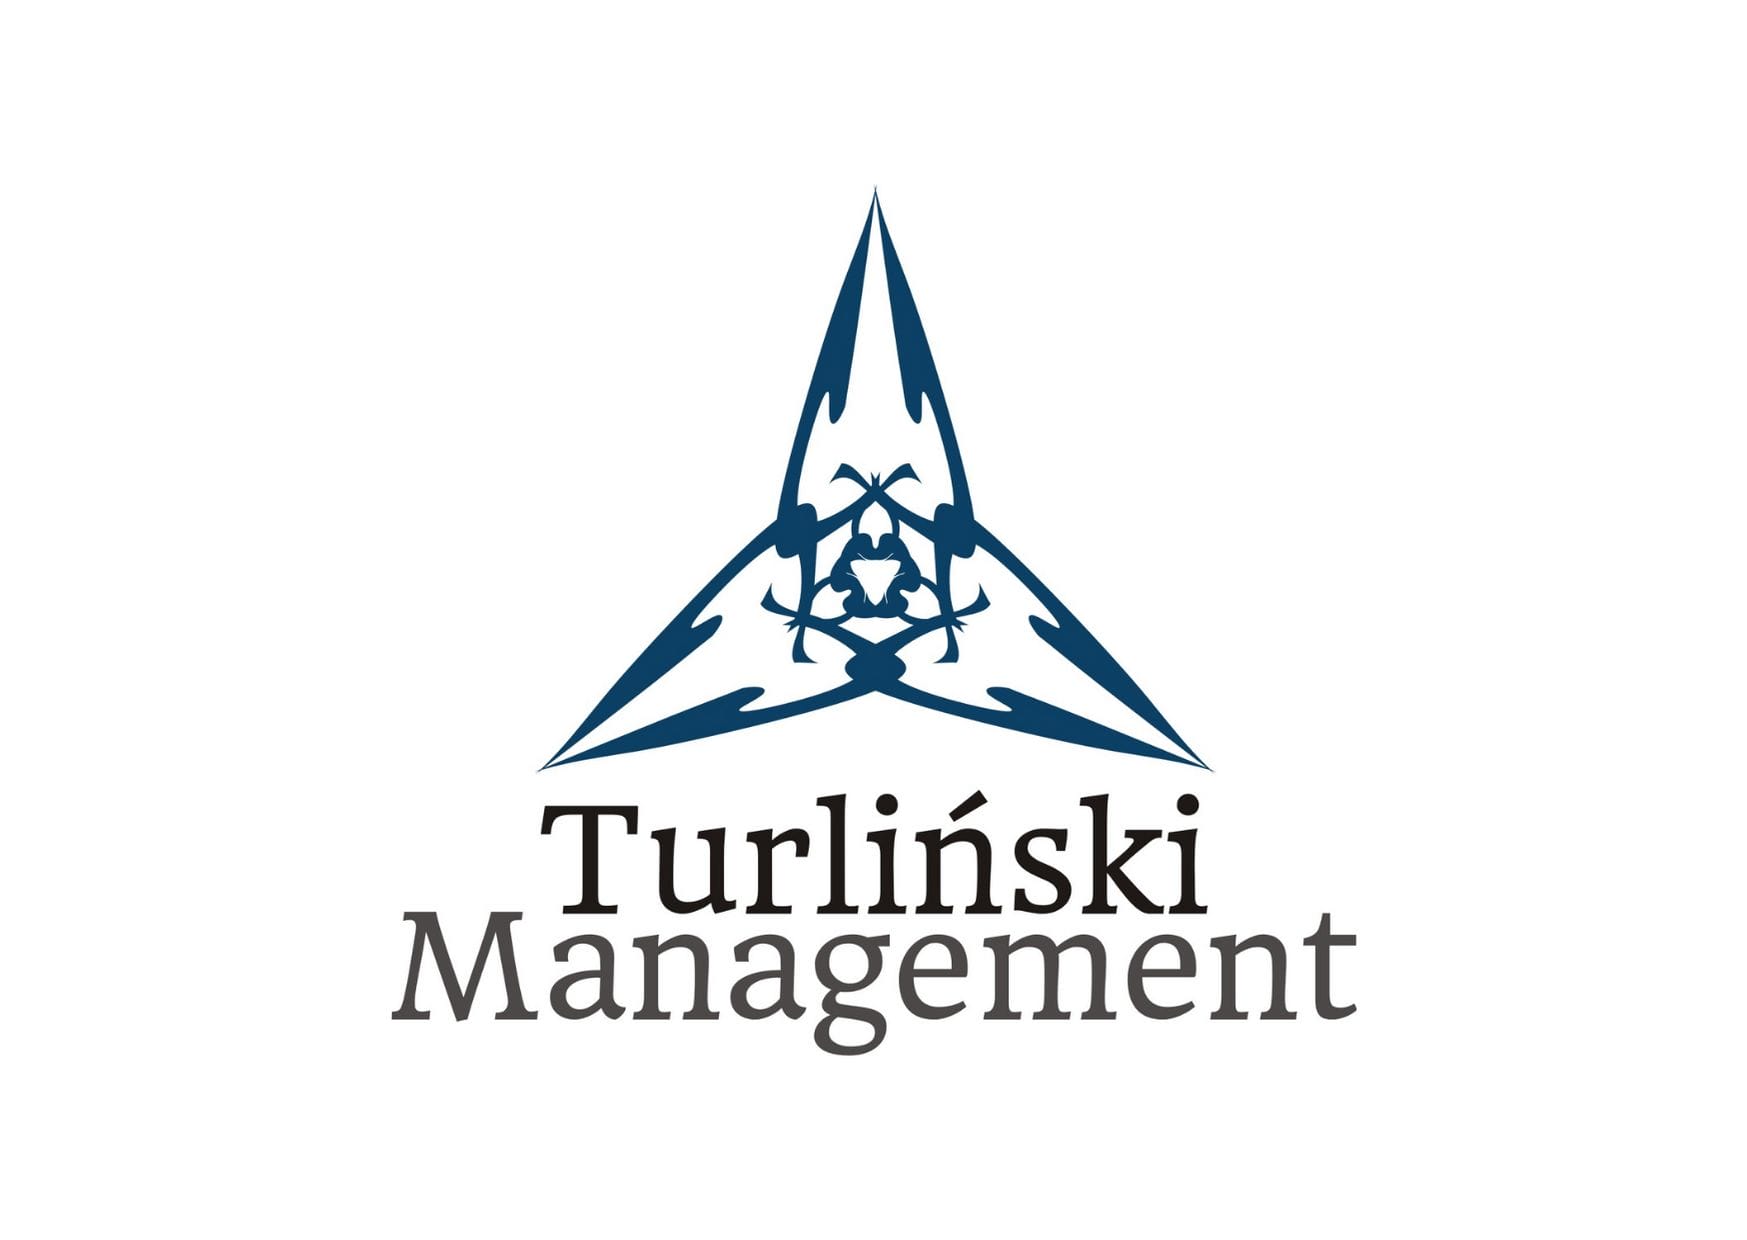 Turliński Management